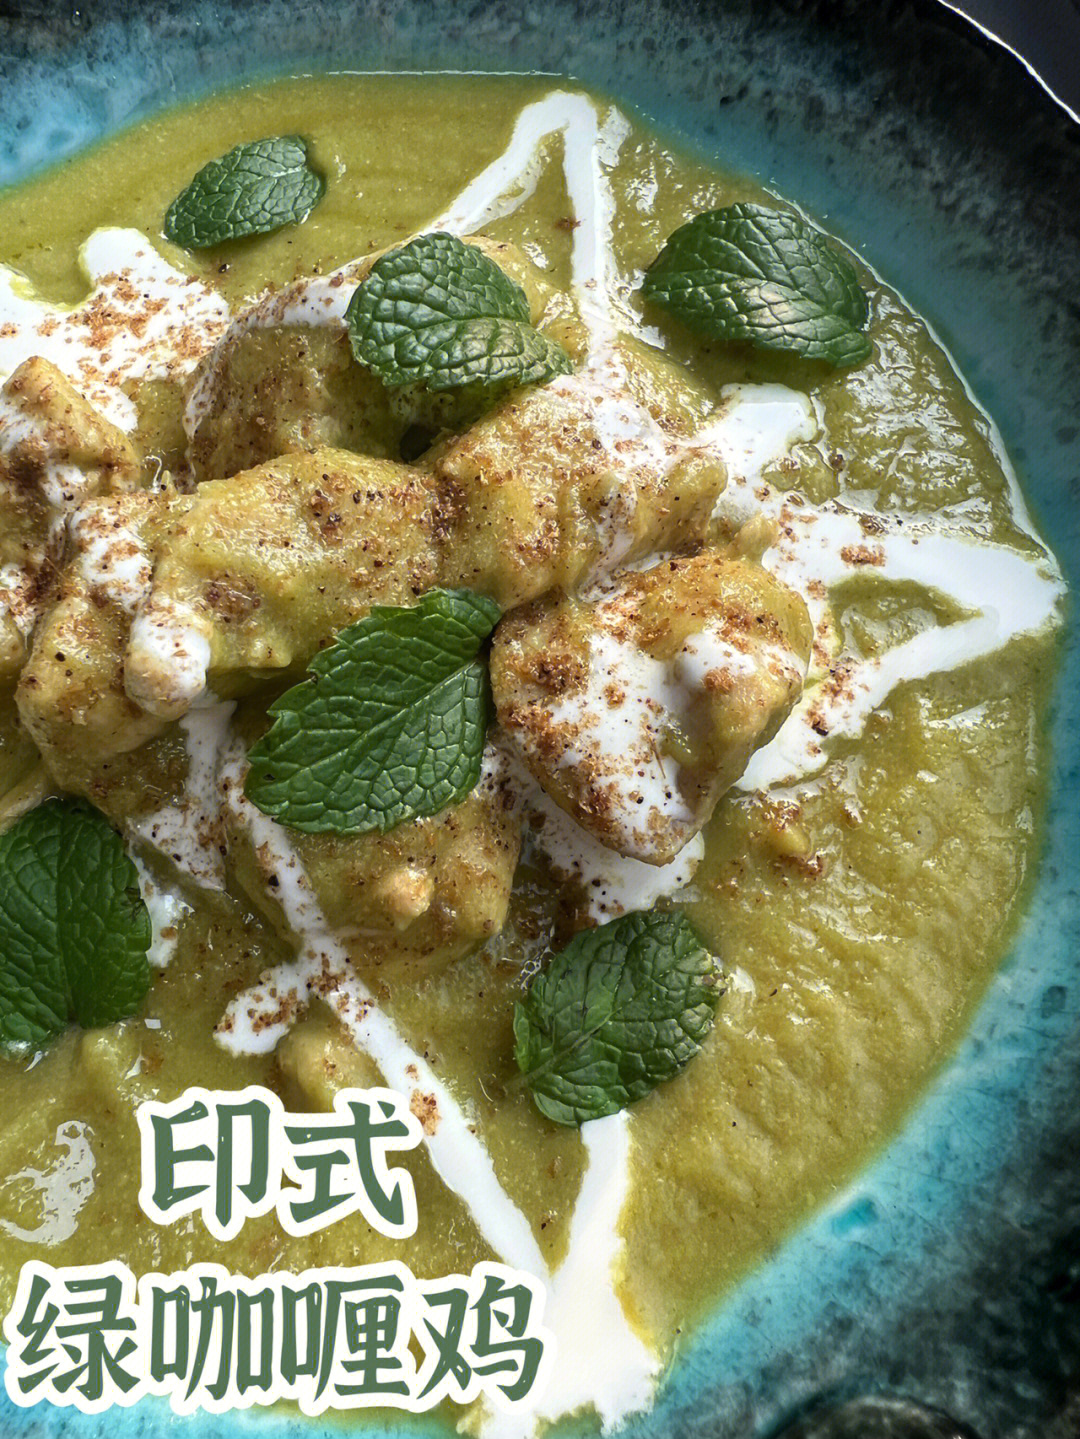 今天给大家带来一道你们绝对没见过的正宗印式绿咖喱鸡,印度作为香料